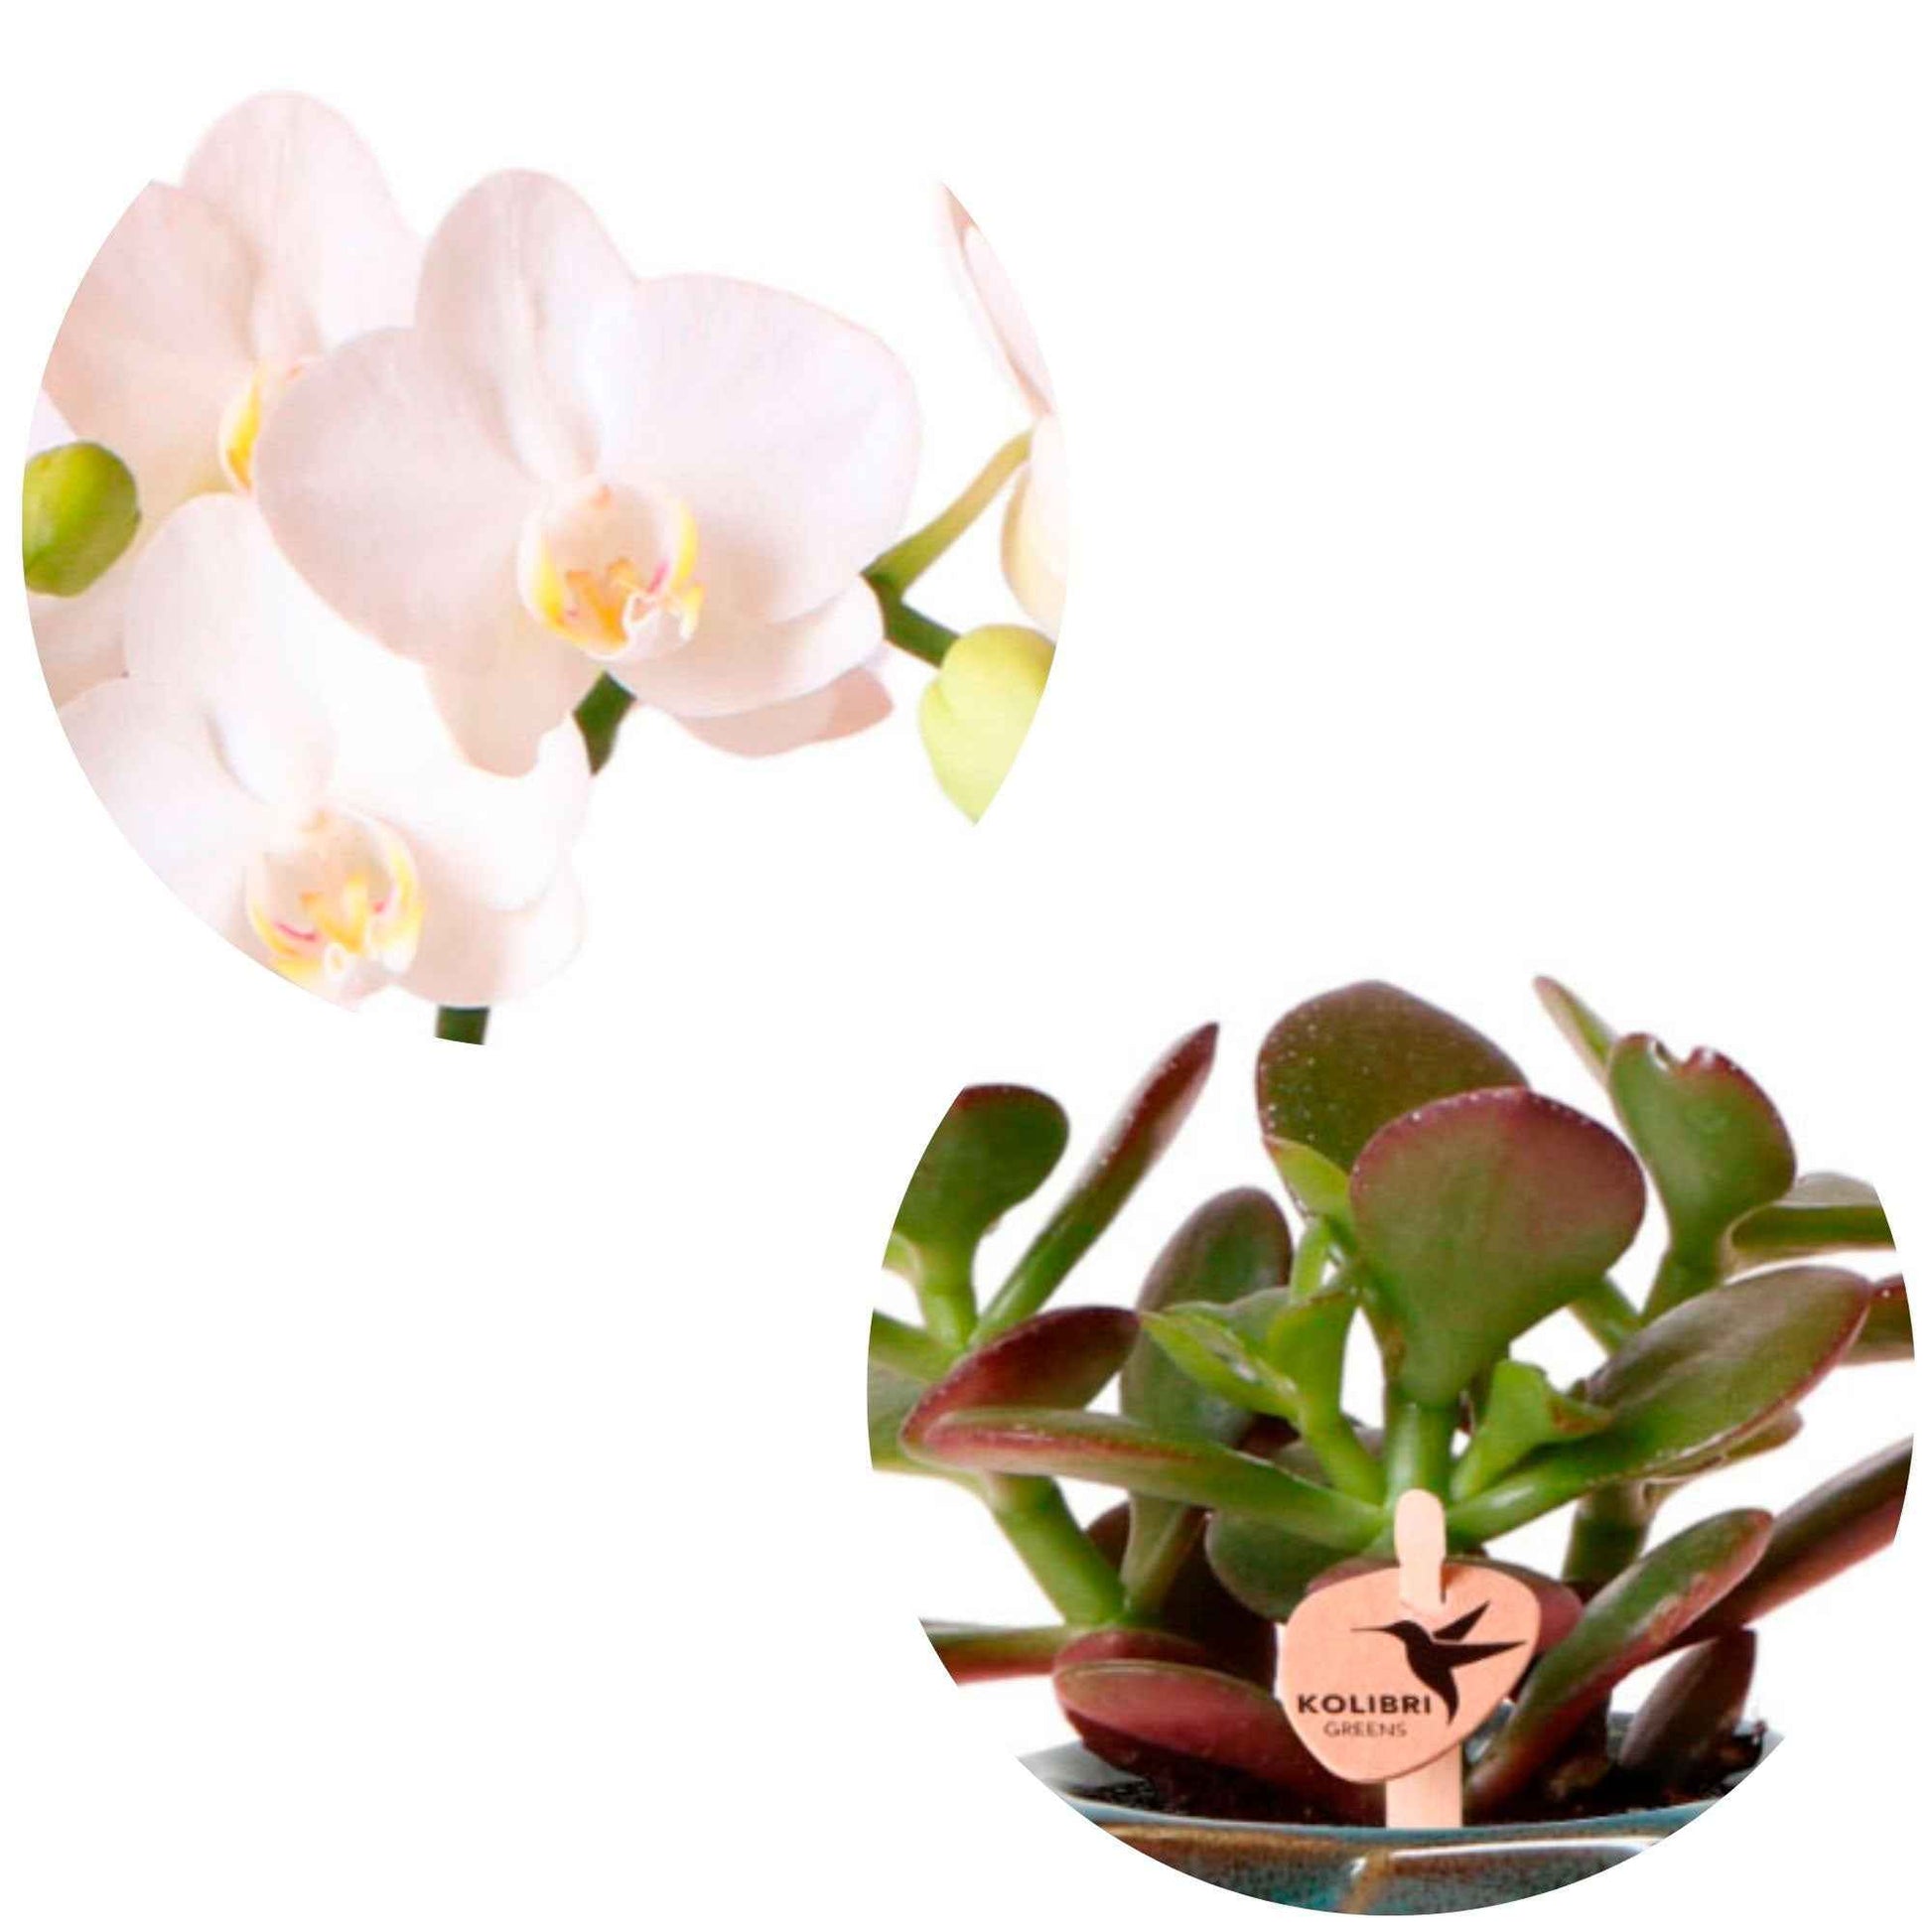 1x Orchidee Phalaenopsis + 1x Succulent Crassula - wit-groen incl. sierpotten groen - Binnenplanten in sierpot